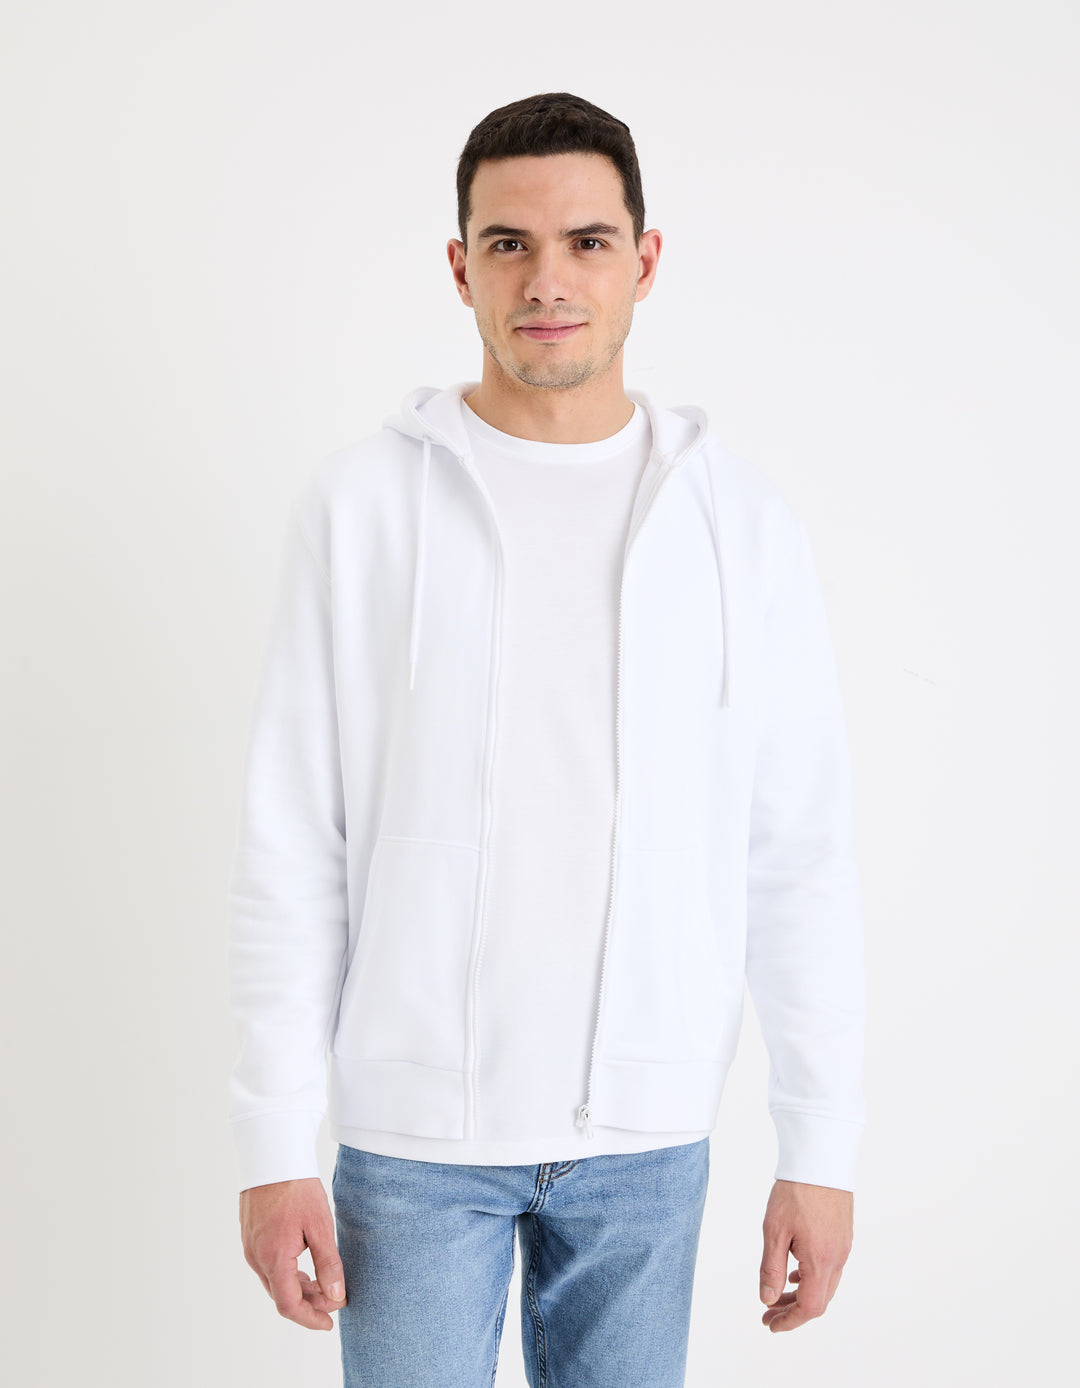 Zippered sweatshirt Hooded 100% cotton